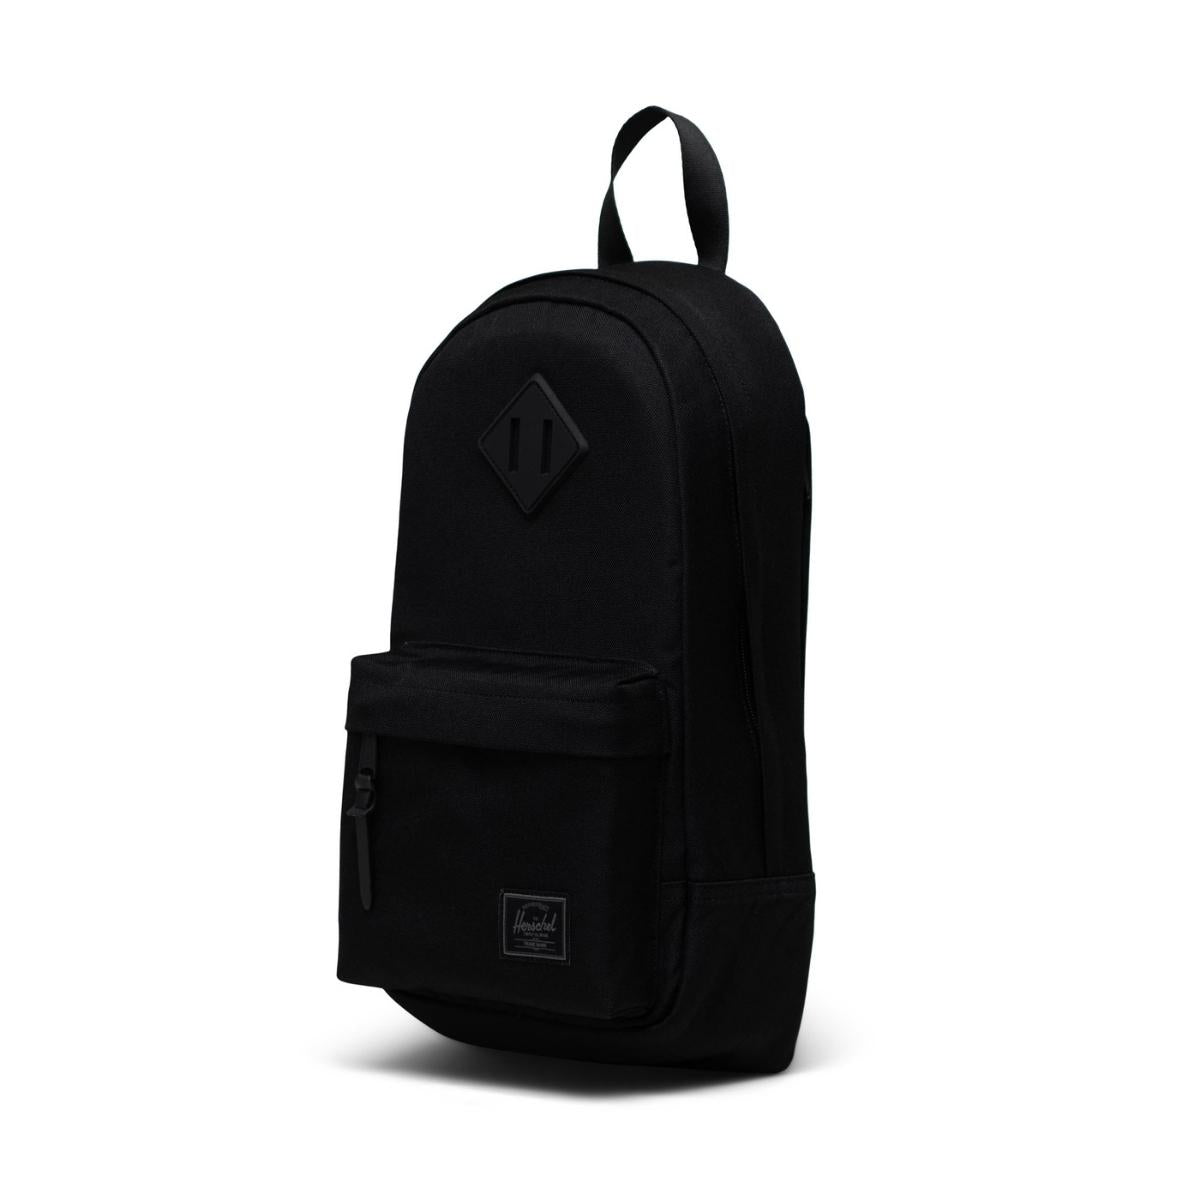 Herschel Heritage Shoulder Bag in Black Tonal